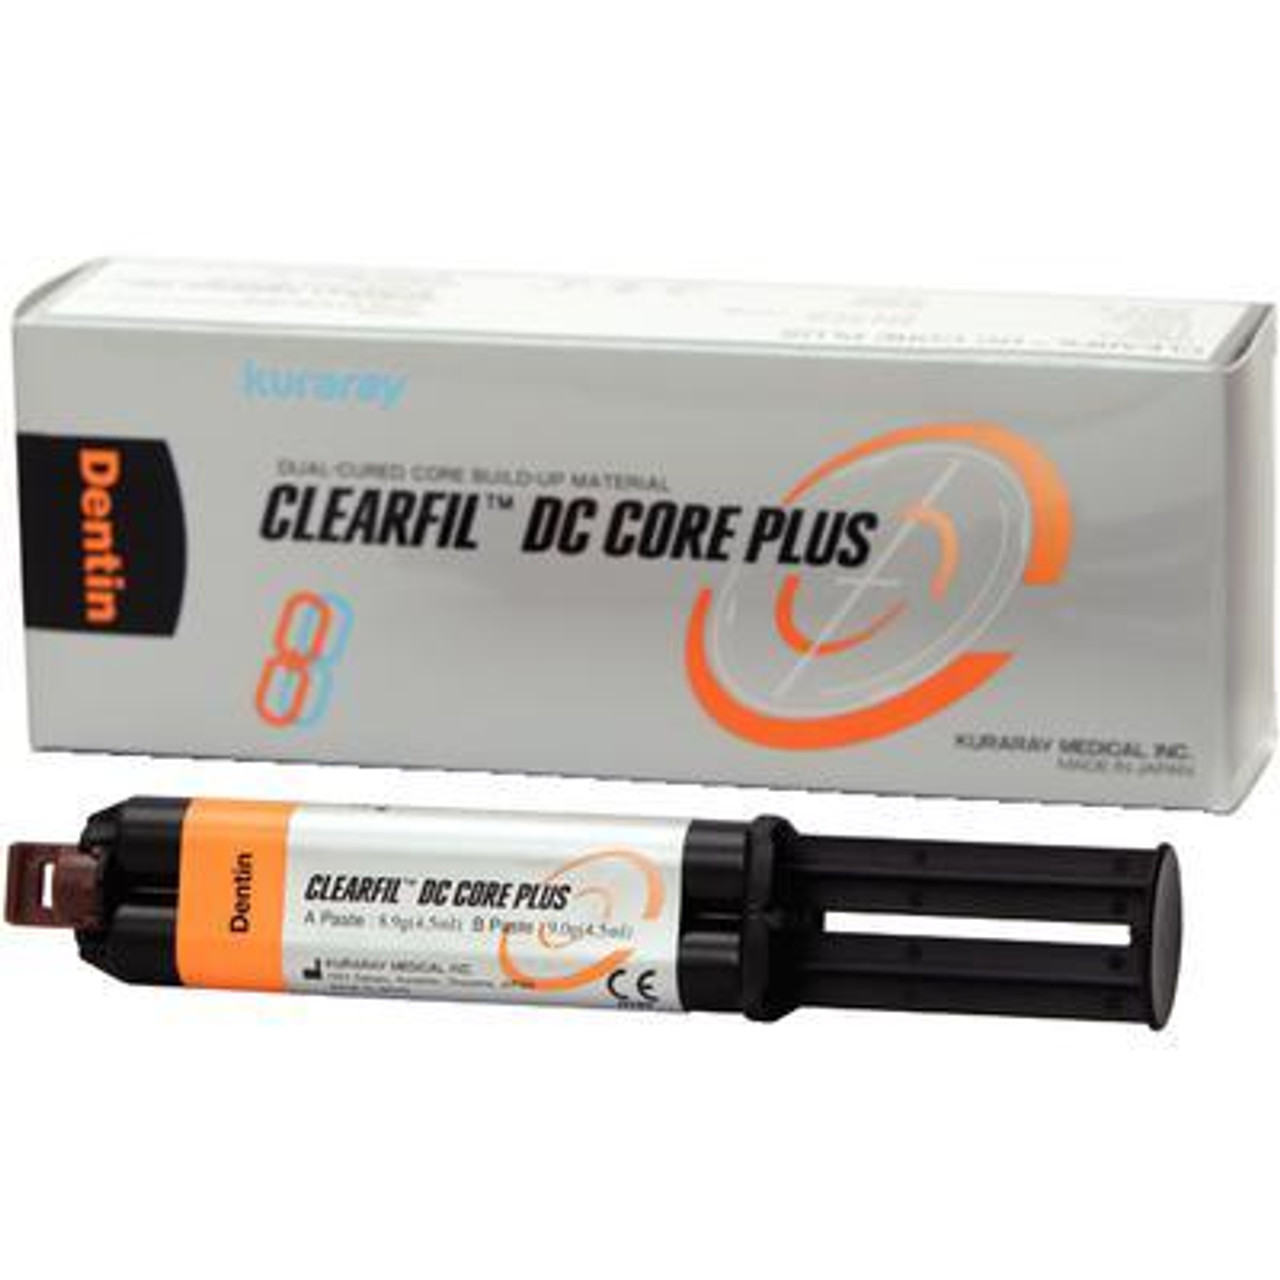 Clearfil DC Core Plus (White)-4.5 ml ea, Kuraray, 2943KA